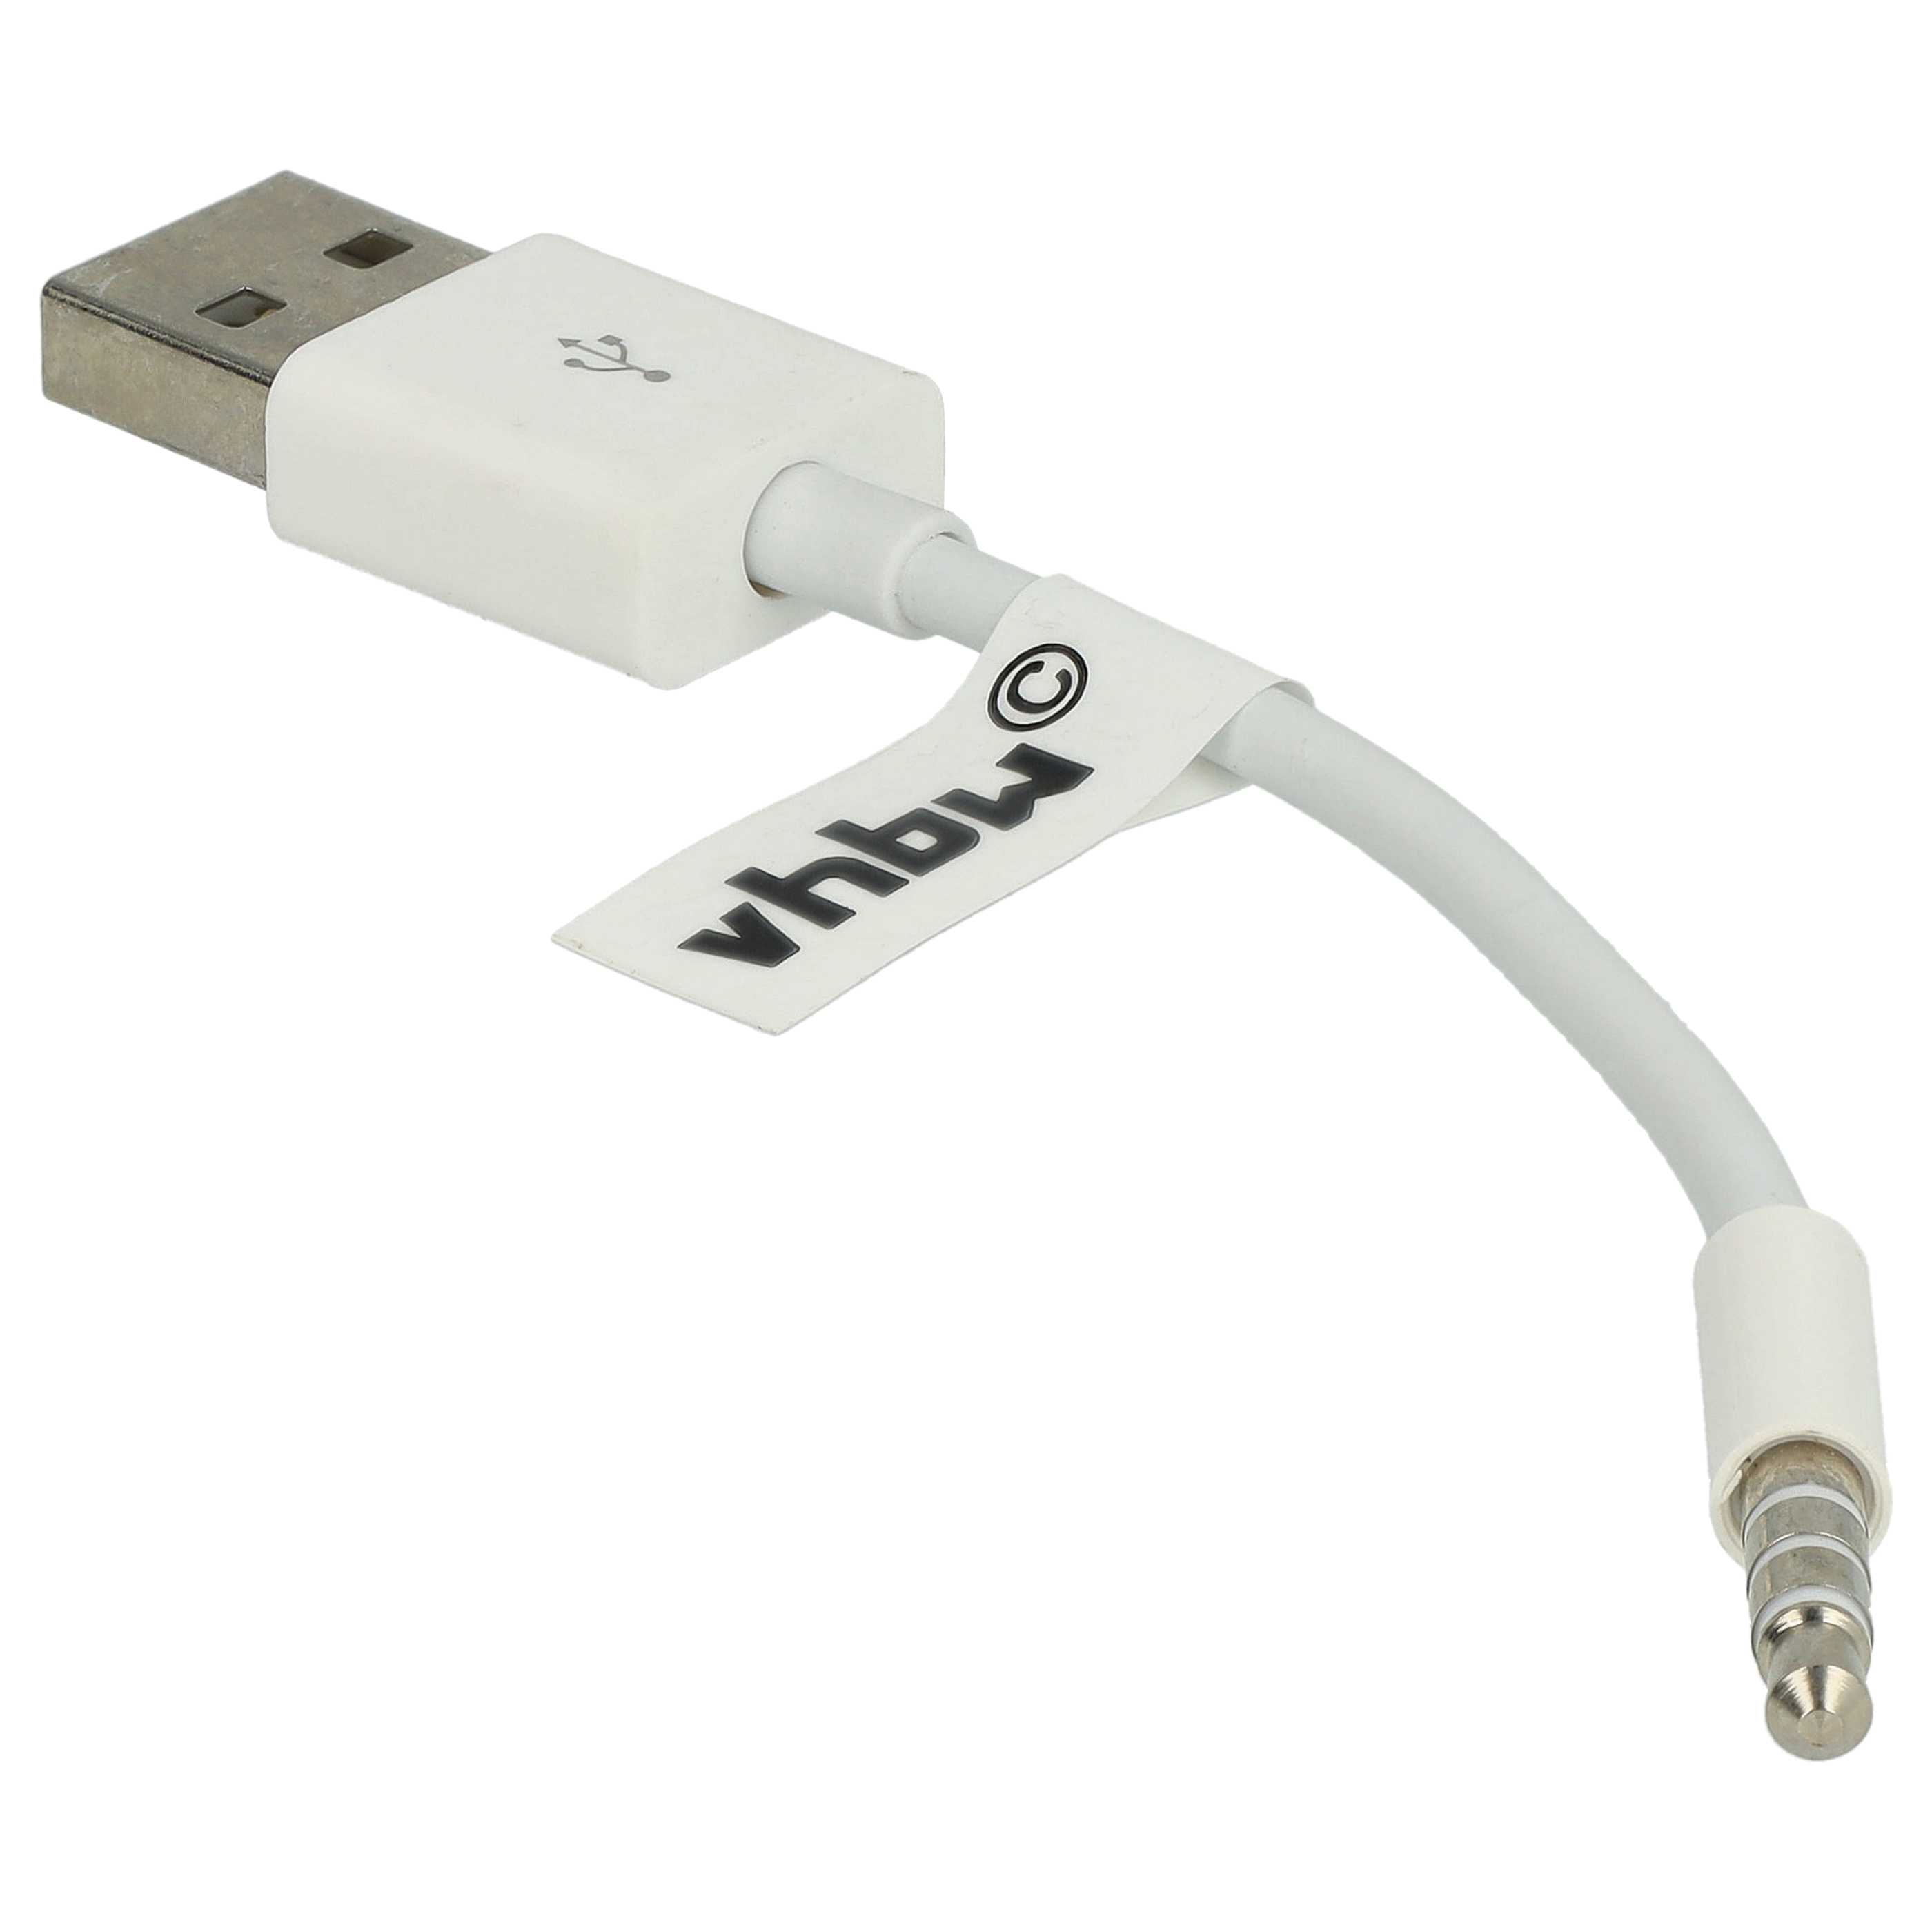 Kabel USB kabel ładujący do Dr. Dre / Apple Beats i in.